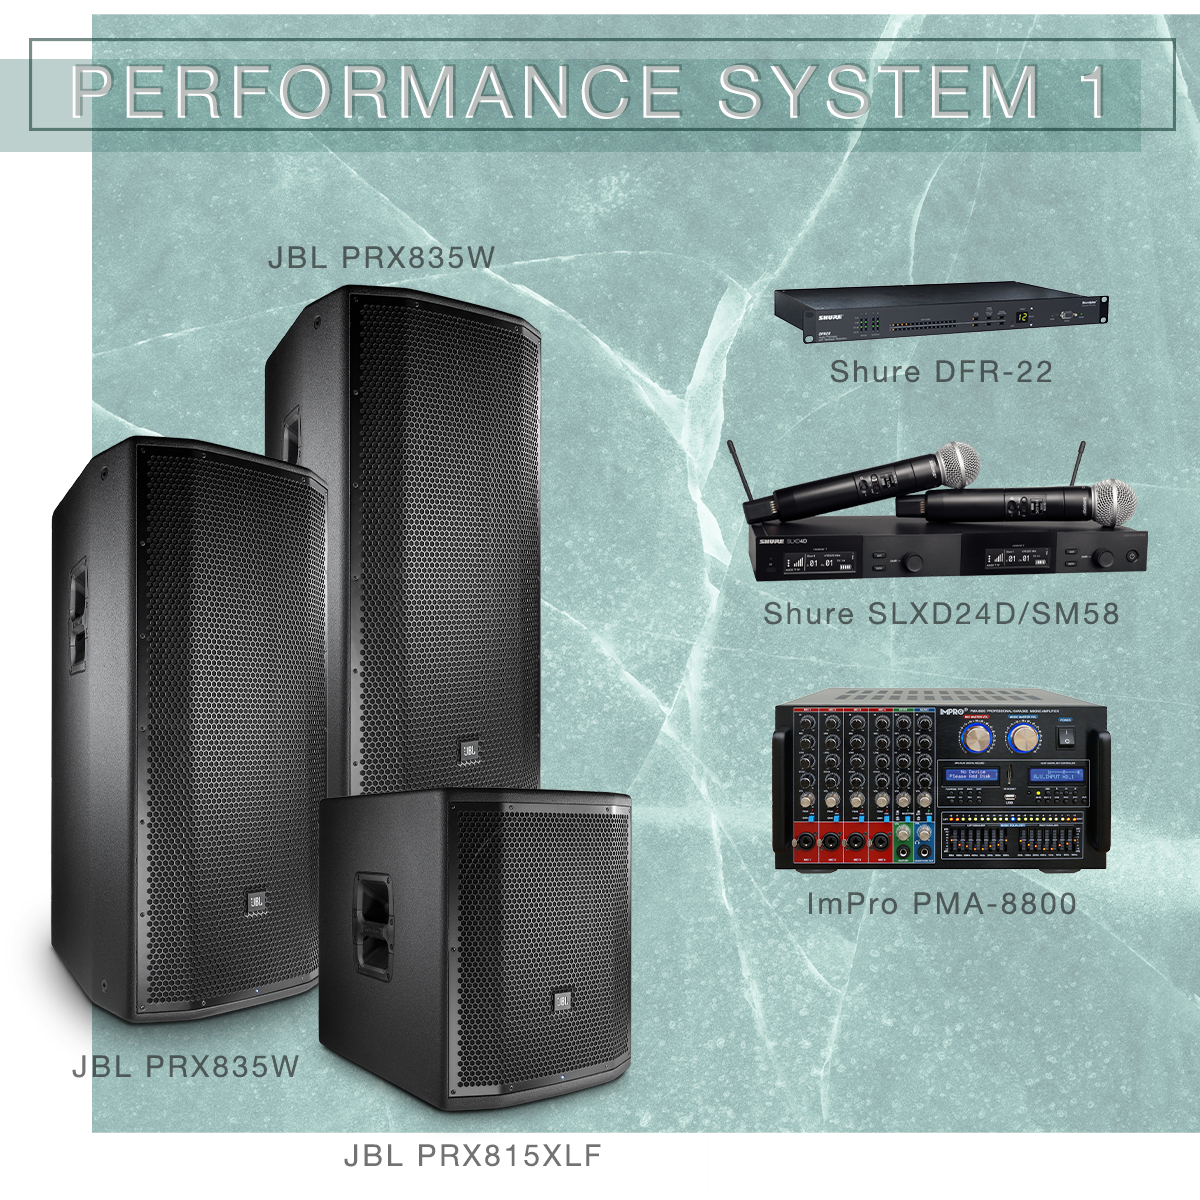 Performance System 2 Karaoke Package with JBL Speakers, Karaoke Player, and Shure Microphones